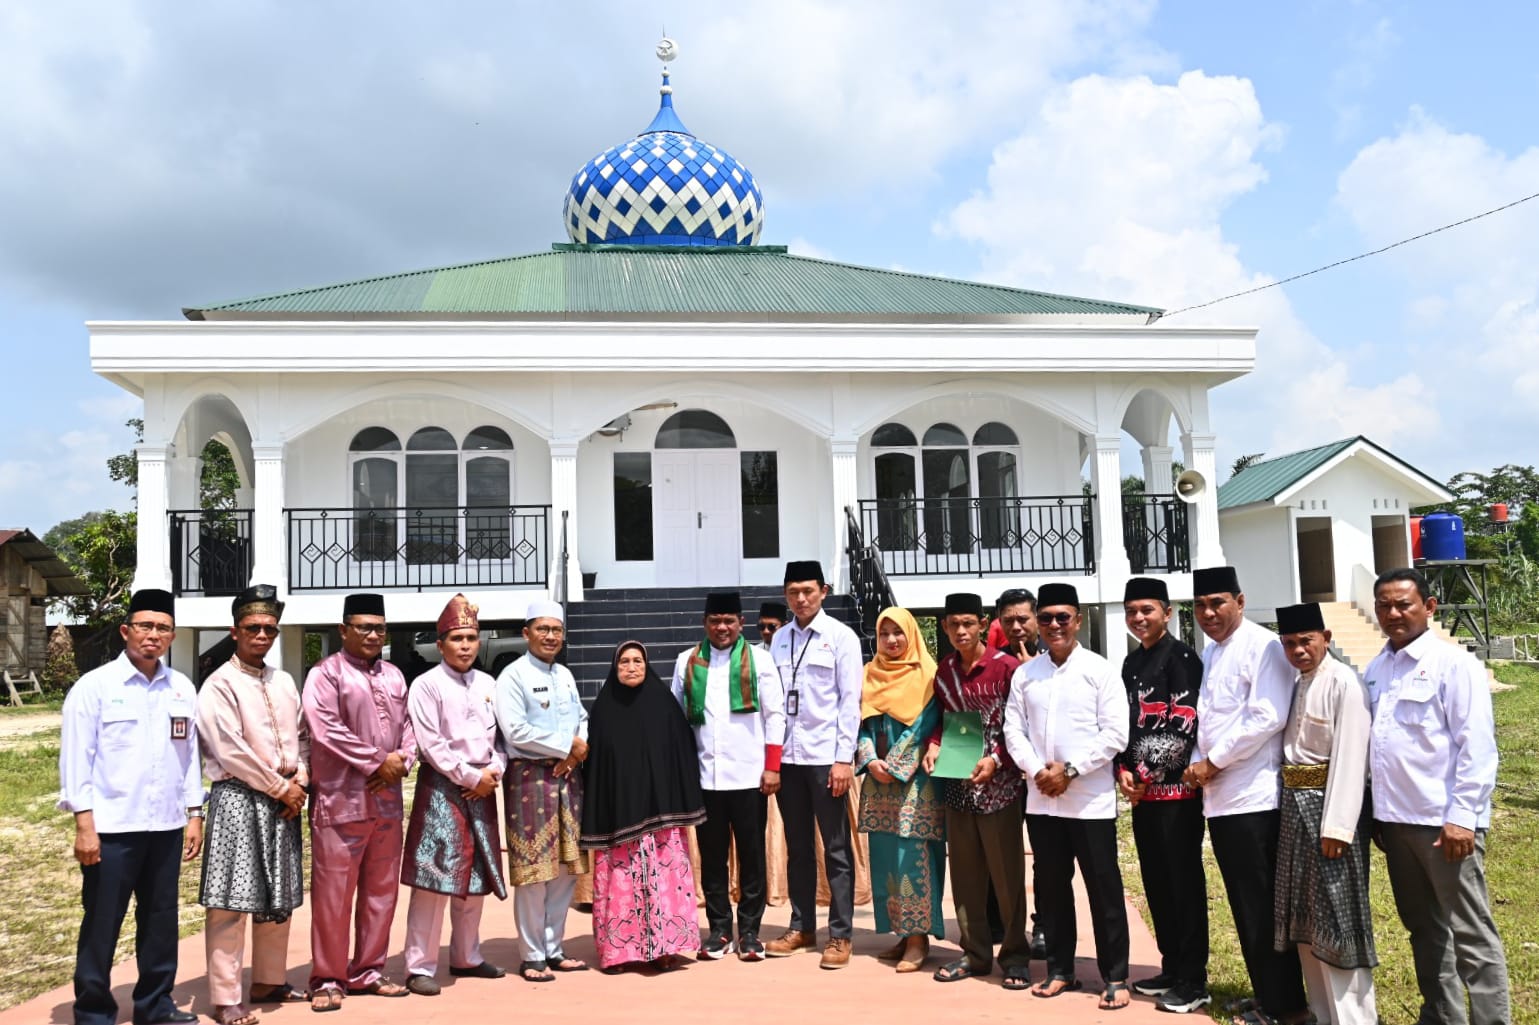 Bupati Pelalawan H. Zukri Resmikan Masjid Nurul Iman di Dusun Muara Sako